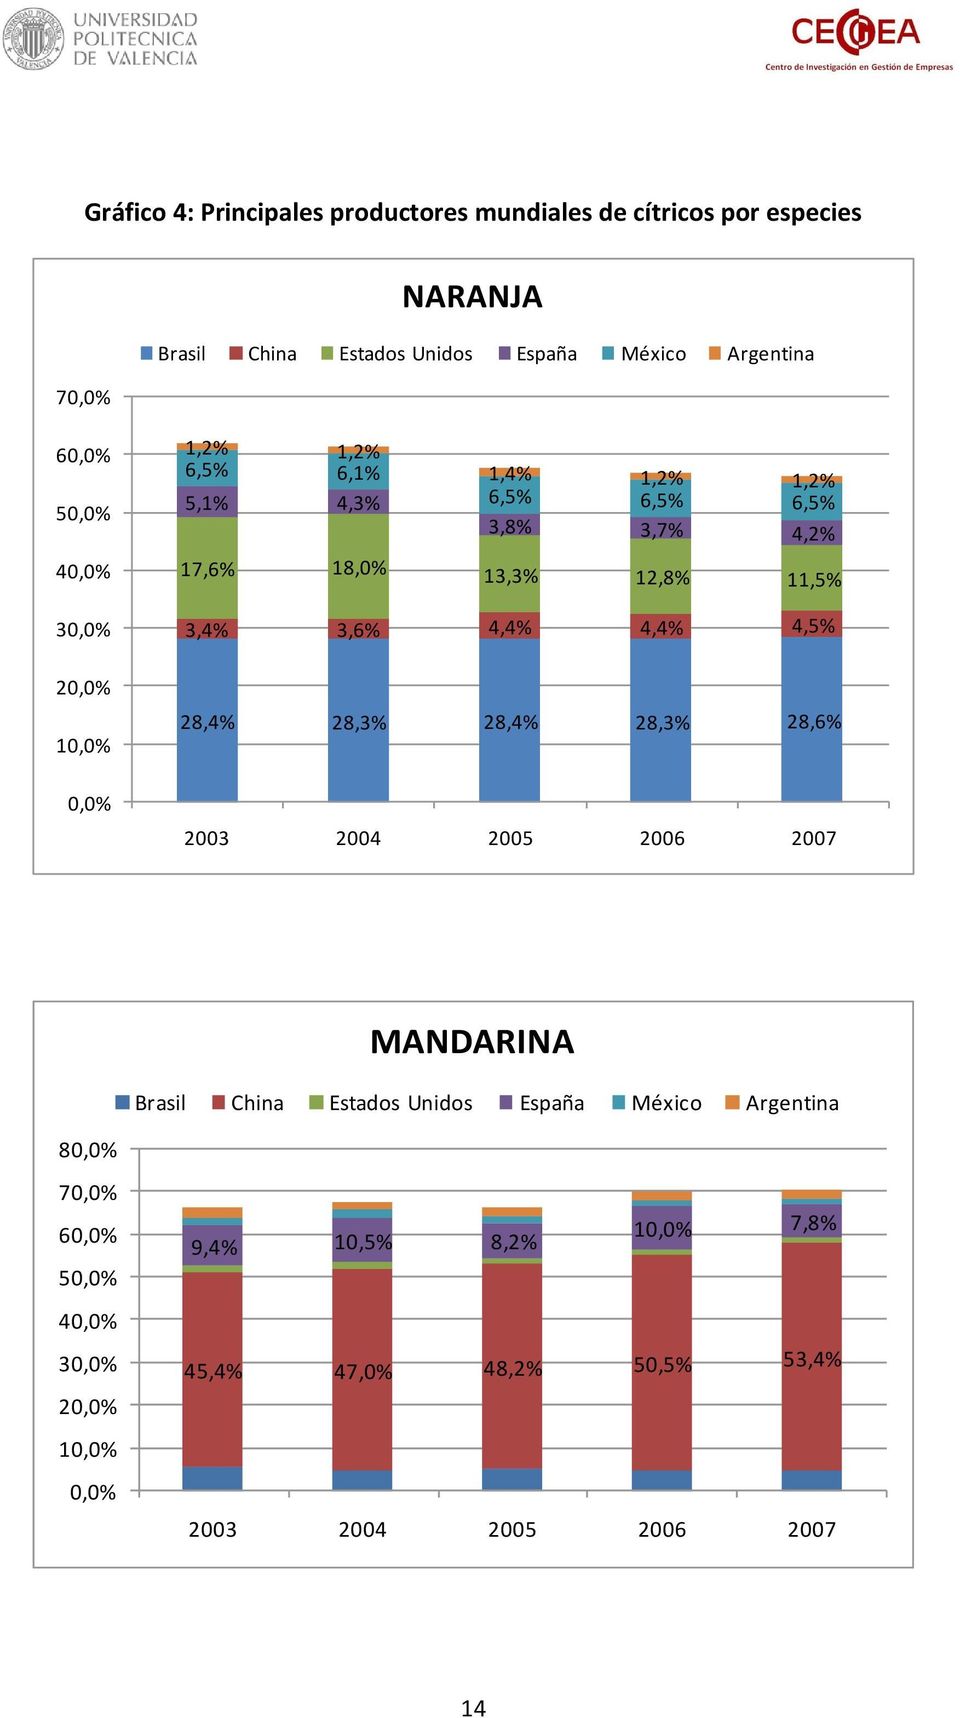 11,5% 3,4% 3,6% 4,4% 4,4% 4,5% 28,4% 28,3% 28,4% 28,3% 28,6% 2003 2004 2005 2006 2007 MANDARINA Brasil China Estados Unidos España México